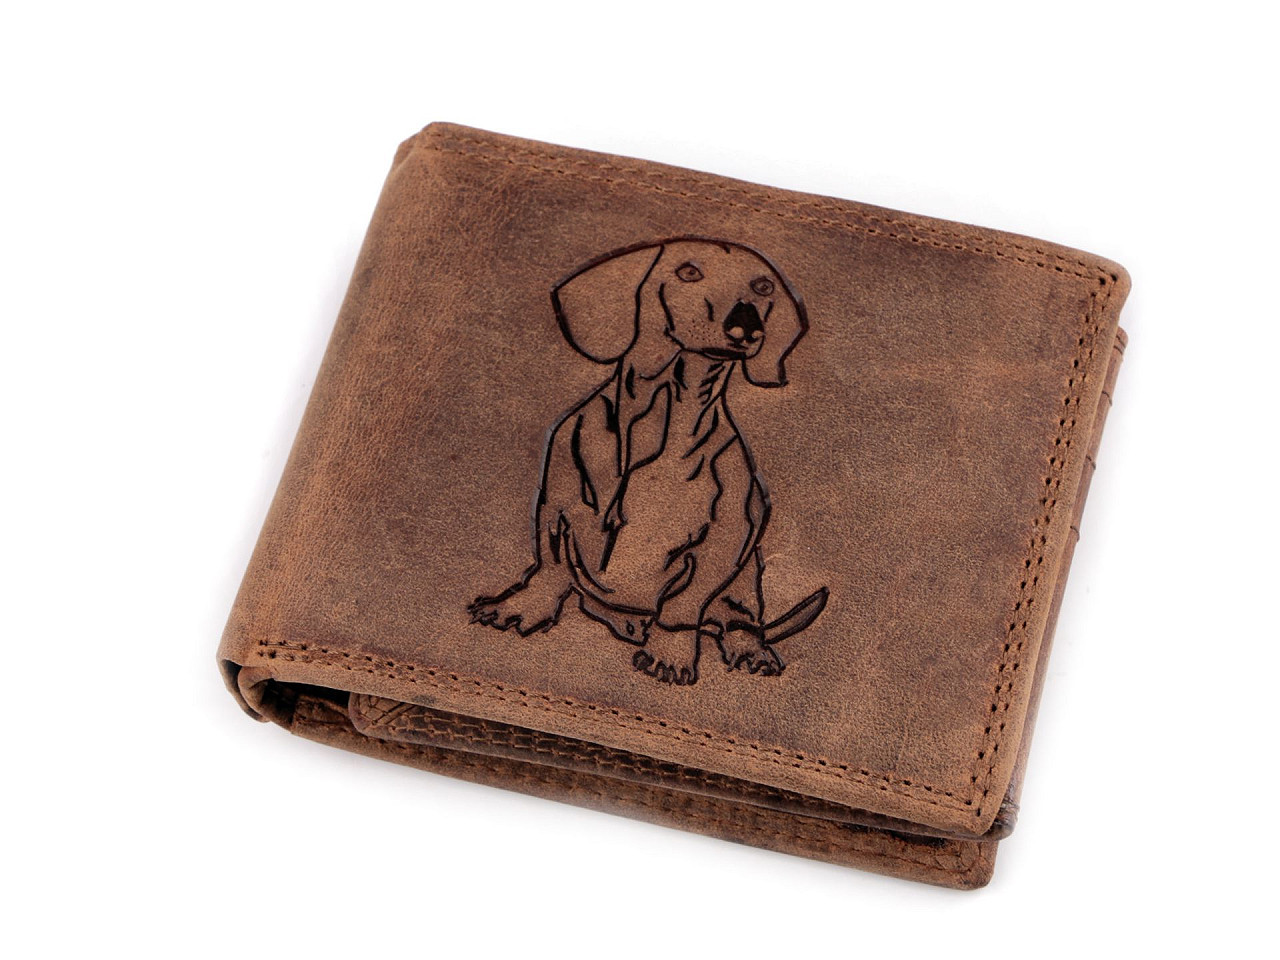 Pánská peněženka kožená pro myslivce, rybáře, motorkáře 9,5x12 cm, barva 18 hnědá světlá pejsek